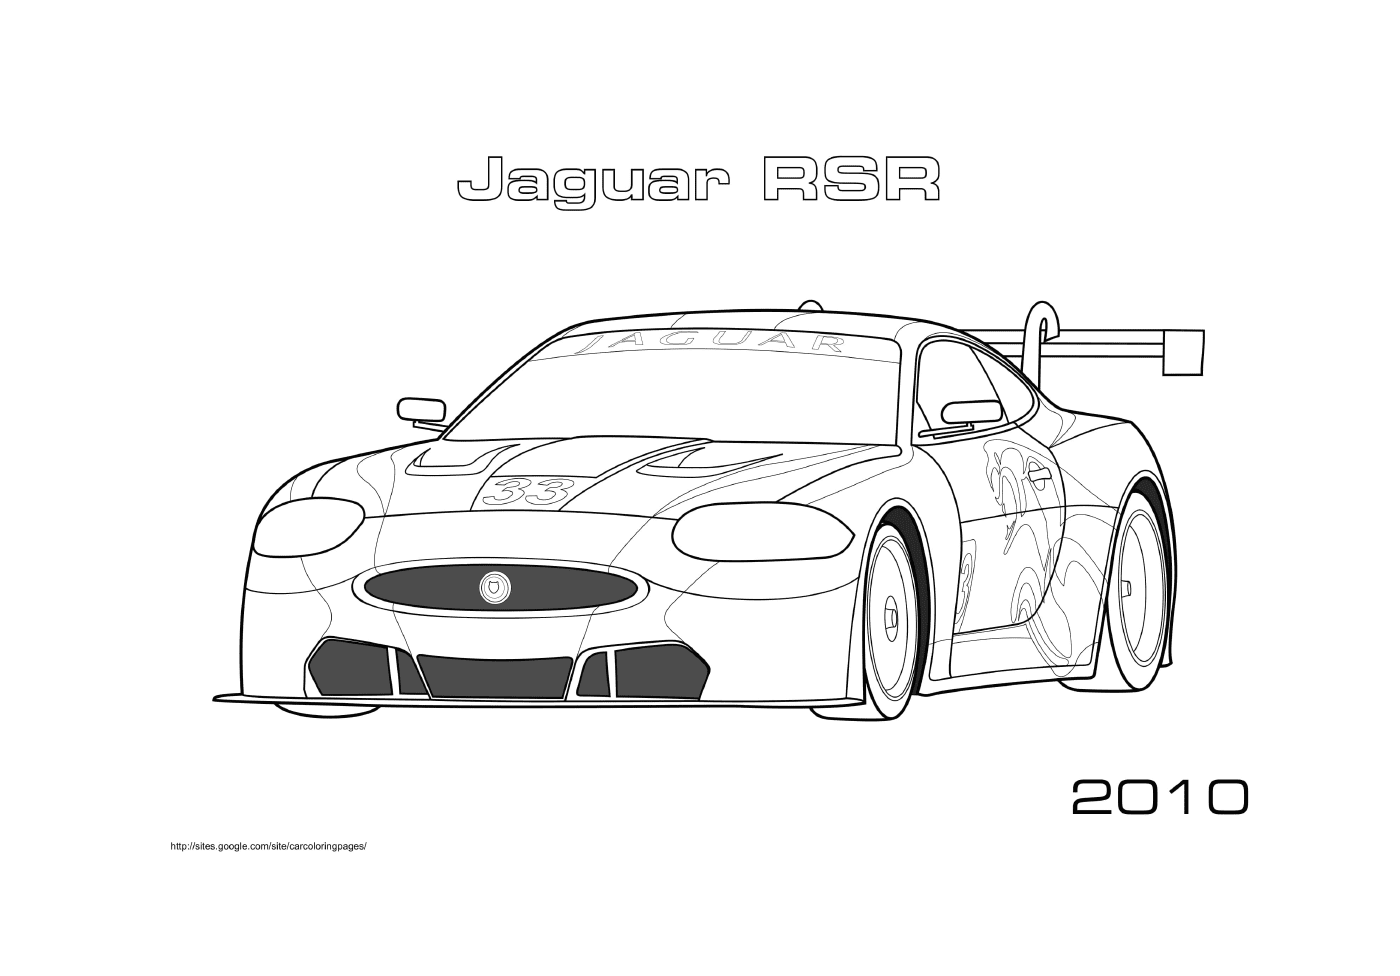 Jaguar Rsr 2010